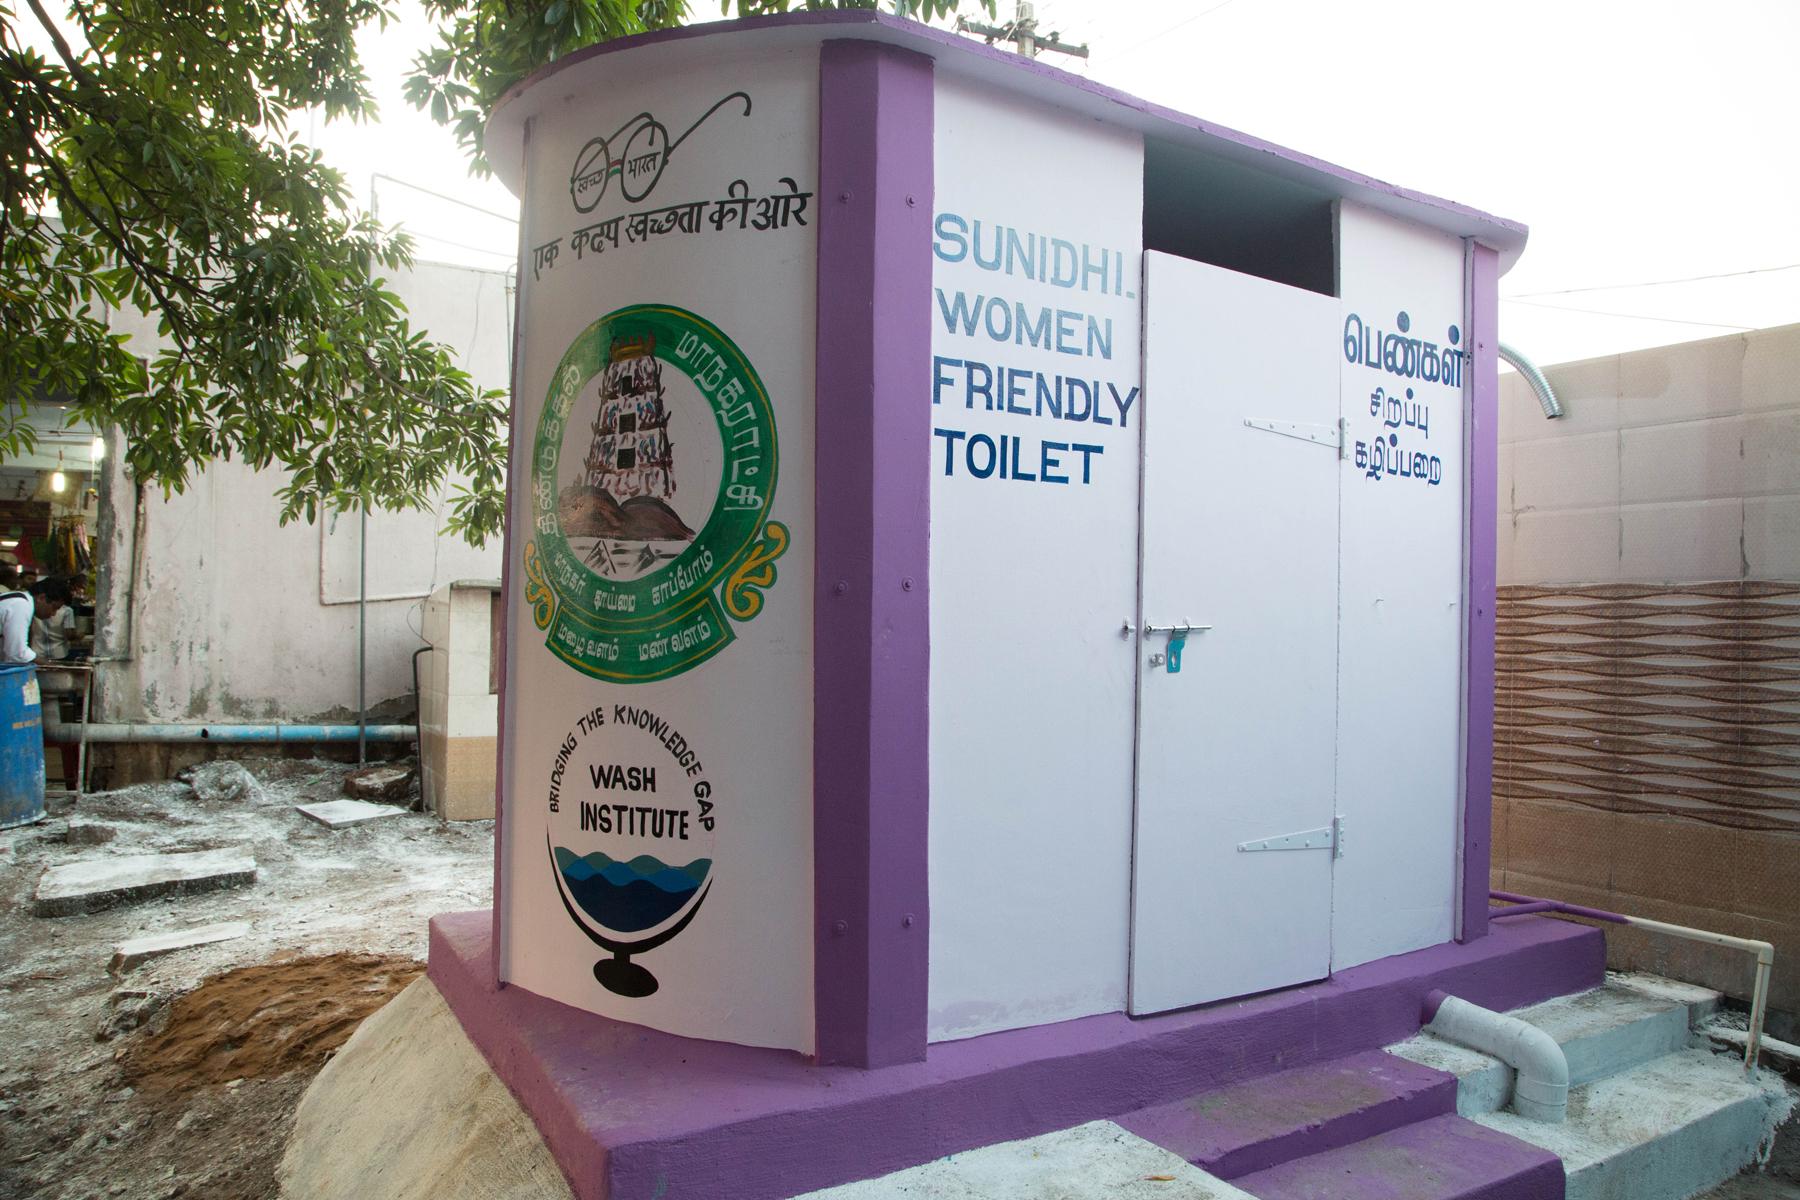 Sunidhi Toilet- The Women Friendly Toilet